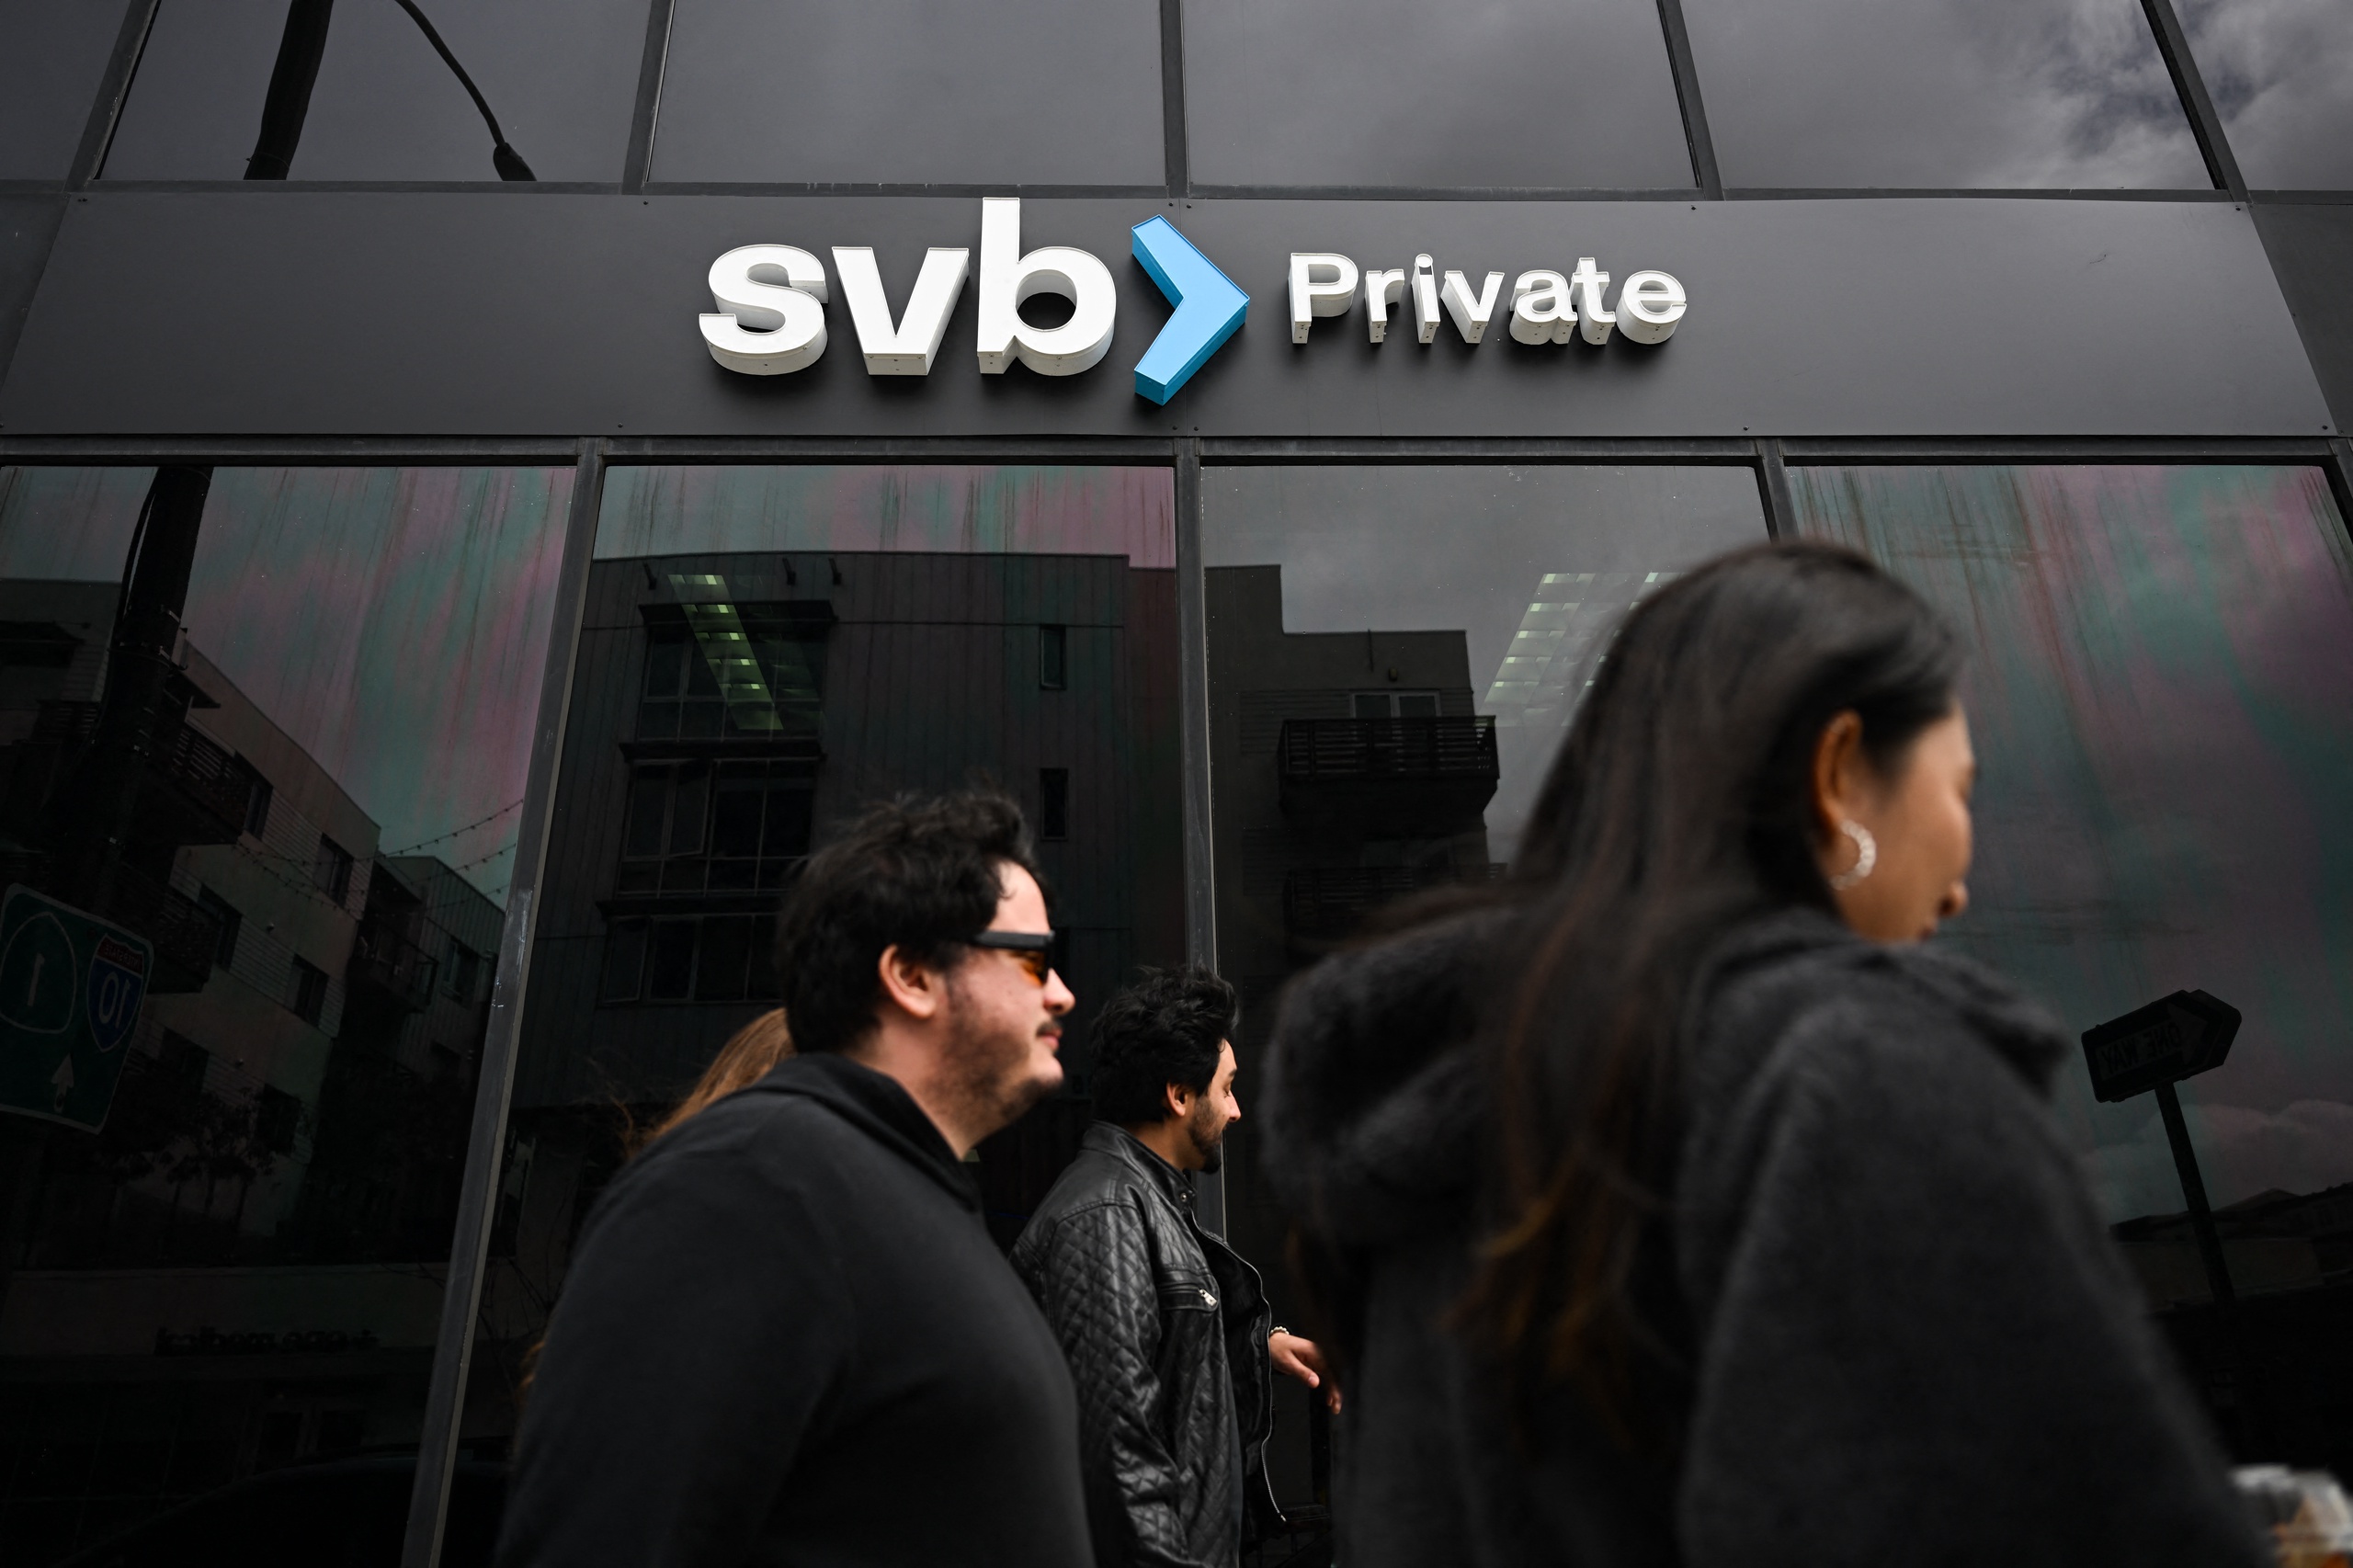 De ondergang van de Silicon Valley Bank (SVB) uit San Francisco heeft de sterk verdeelde Democraten en Republikeinen in Amerika verenigd in één doel: het inzamelen van geld via het nieuws.